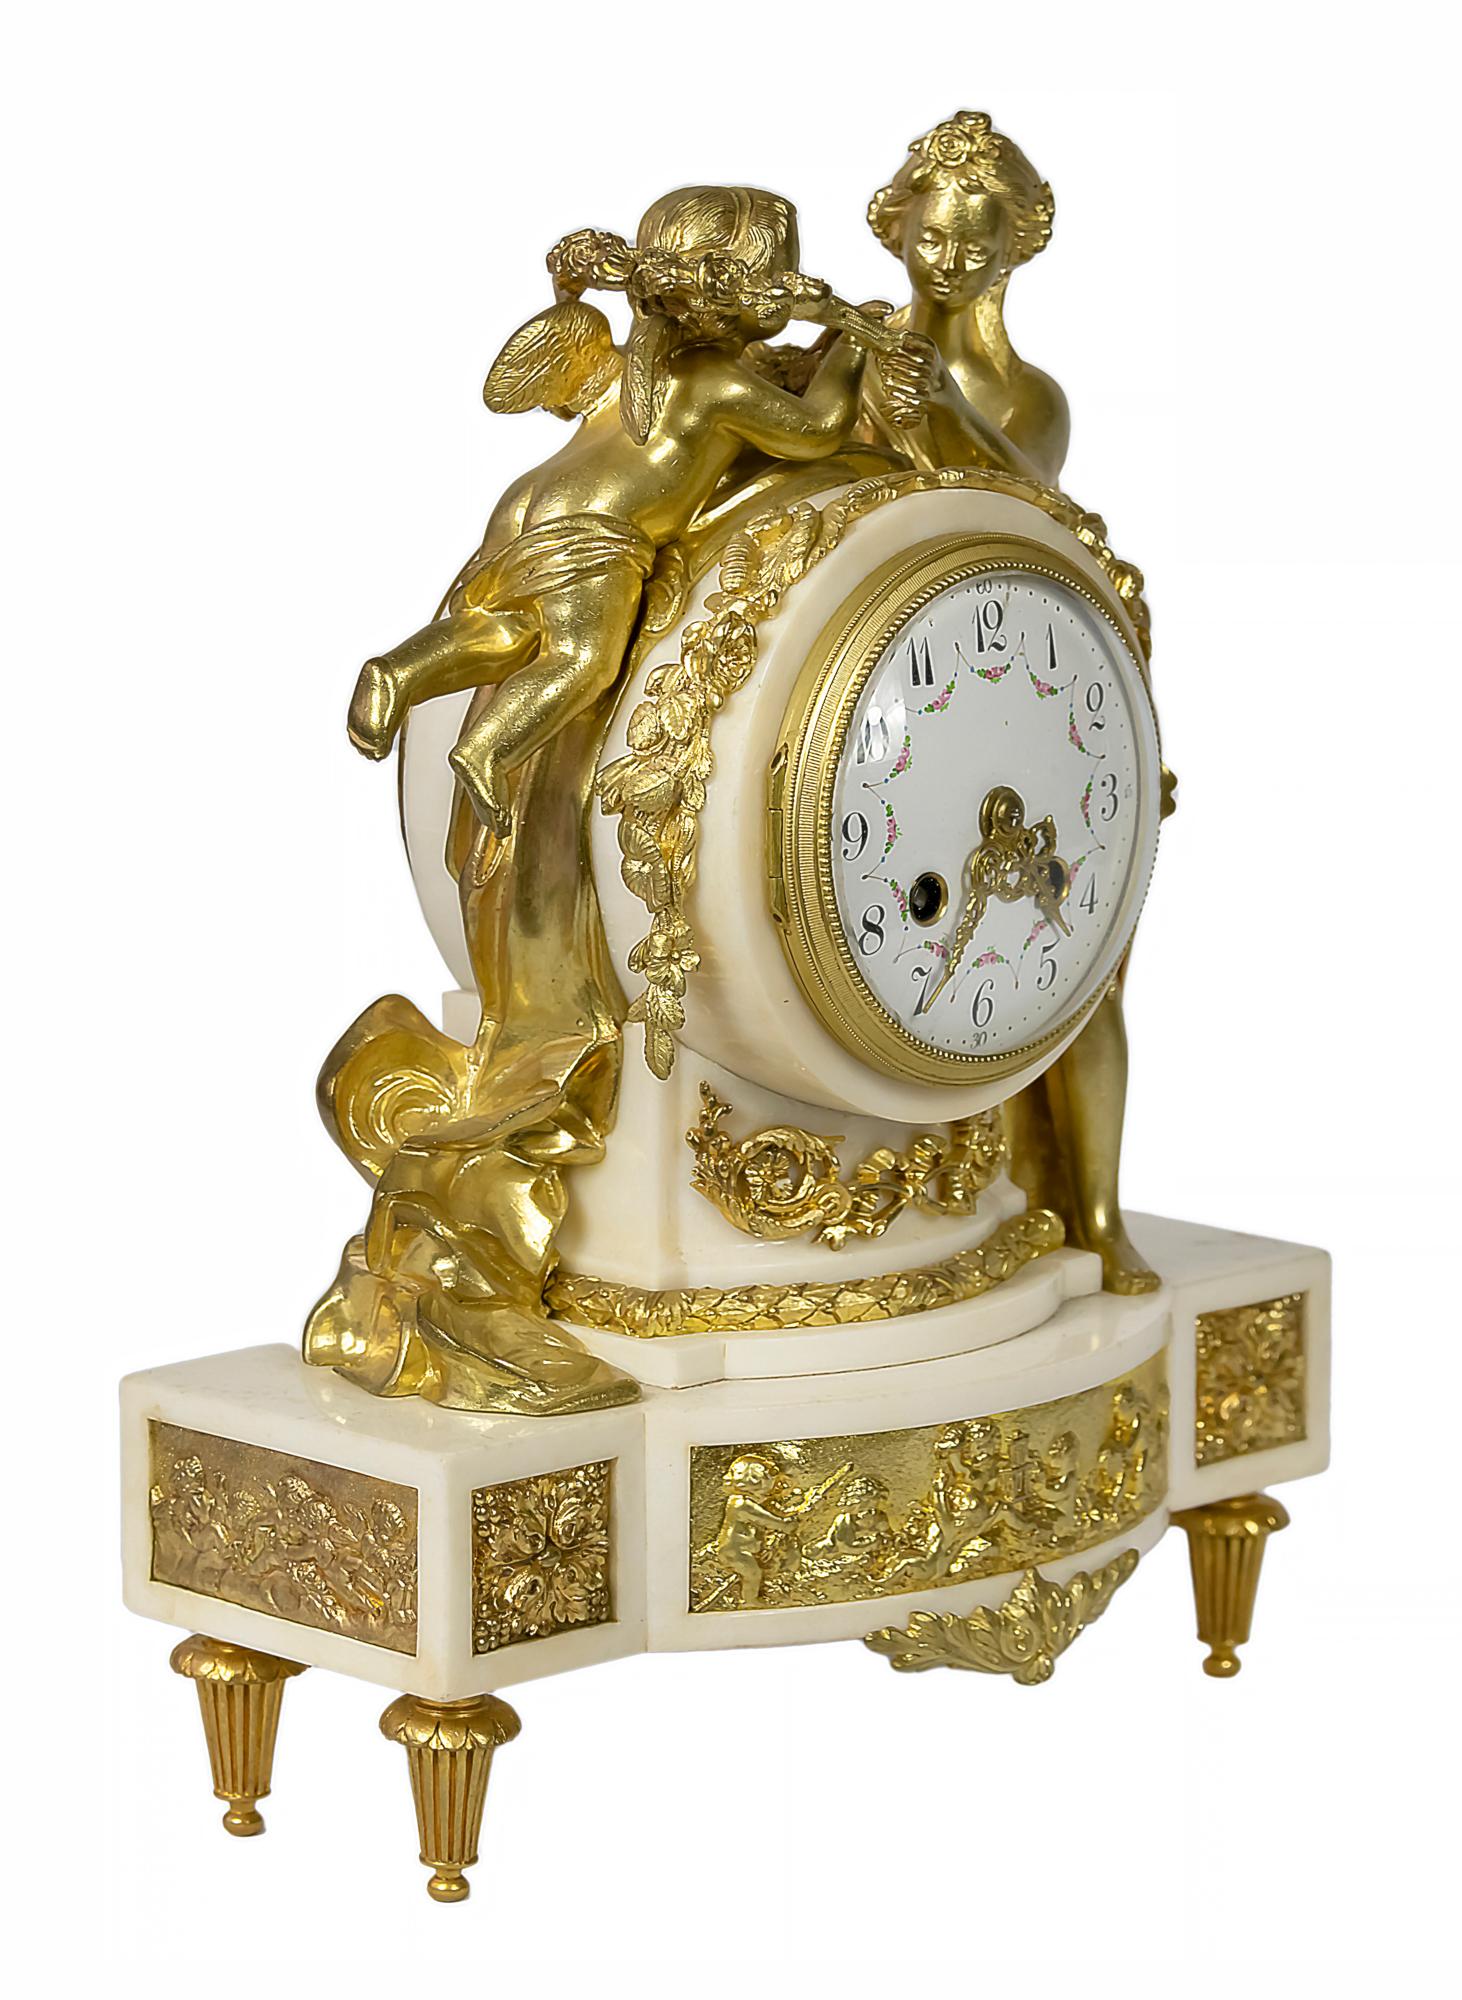 Pendule de cheminée ancienne en bronze doré et marbre blanc de style Louis XVI français du XIXe siècle.
Le boîtier circulaire est décoré d'éléments floraux et surmonté des figures de Vénus et de Cupidon.
Le cadran est en chiffres arabes sur plaque